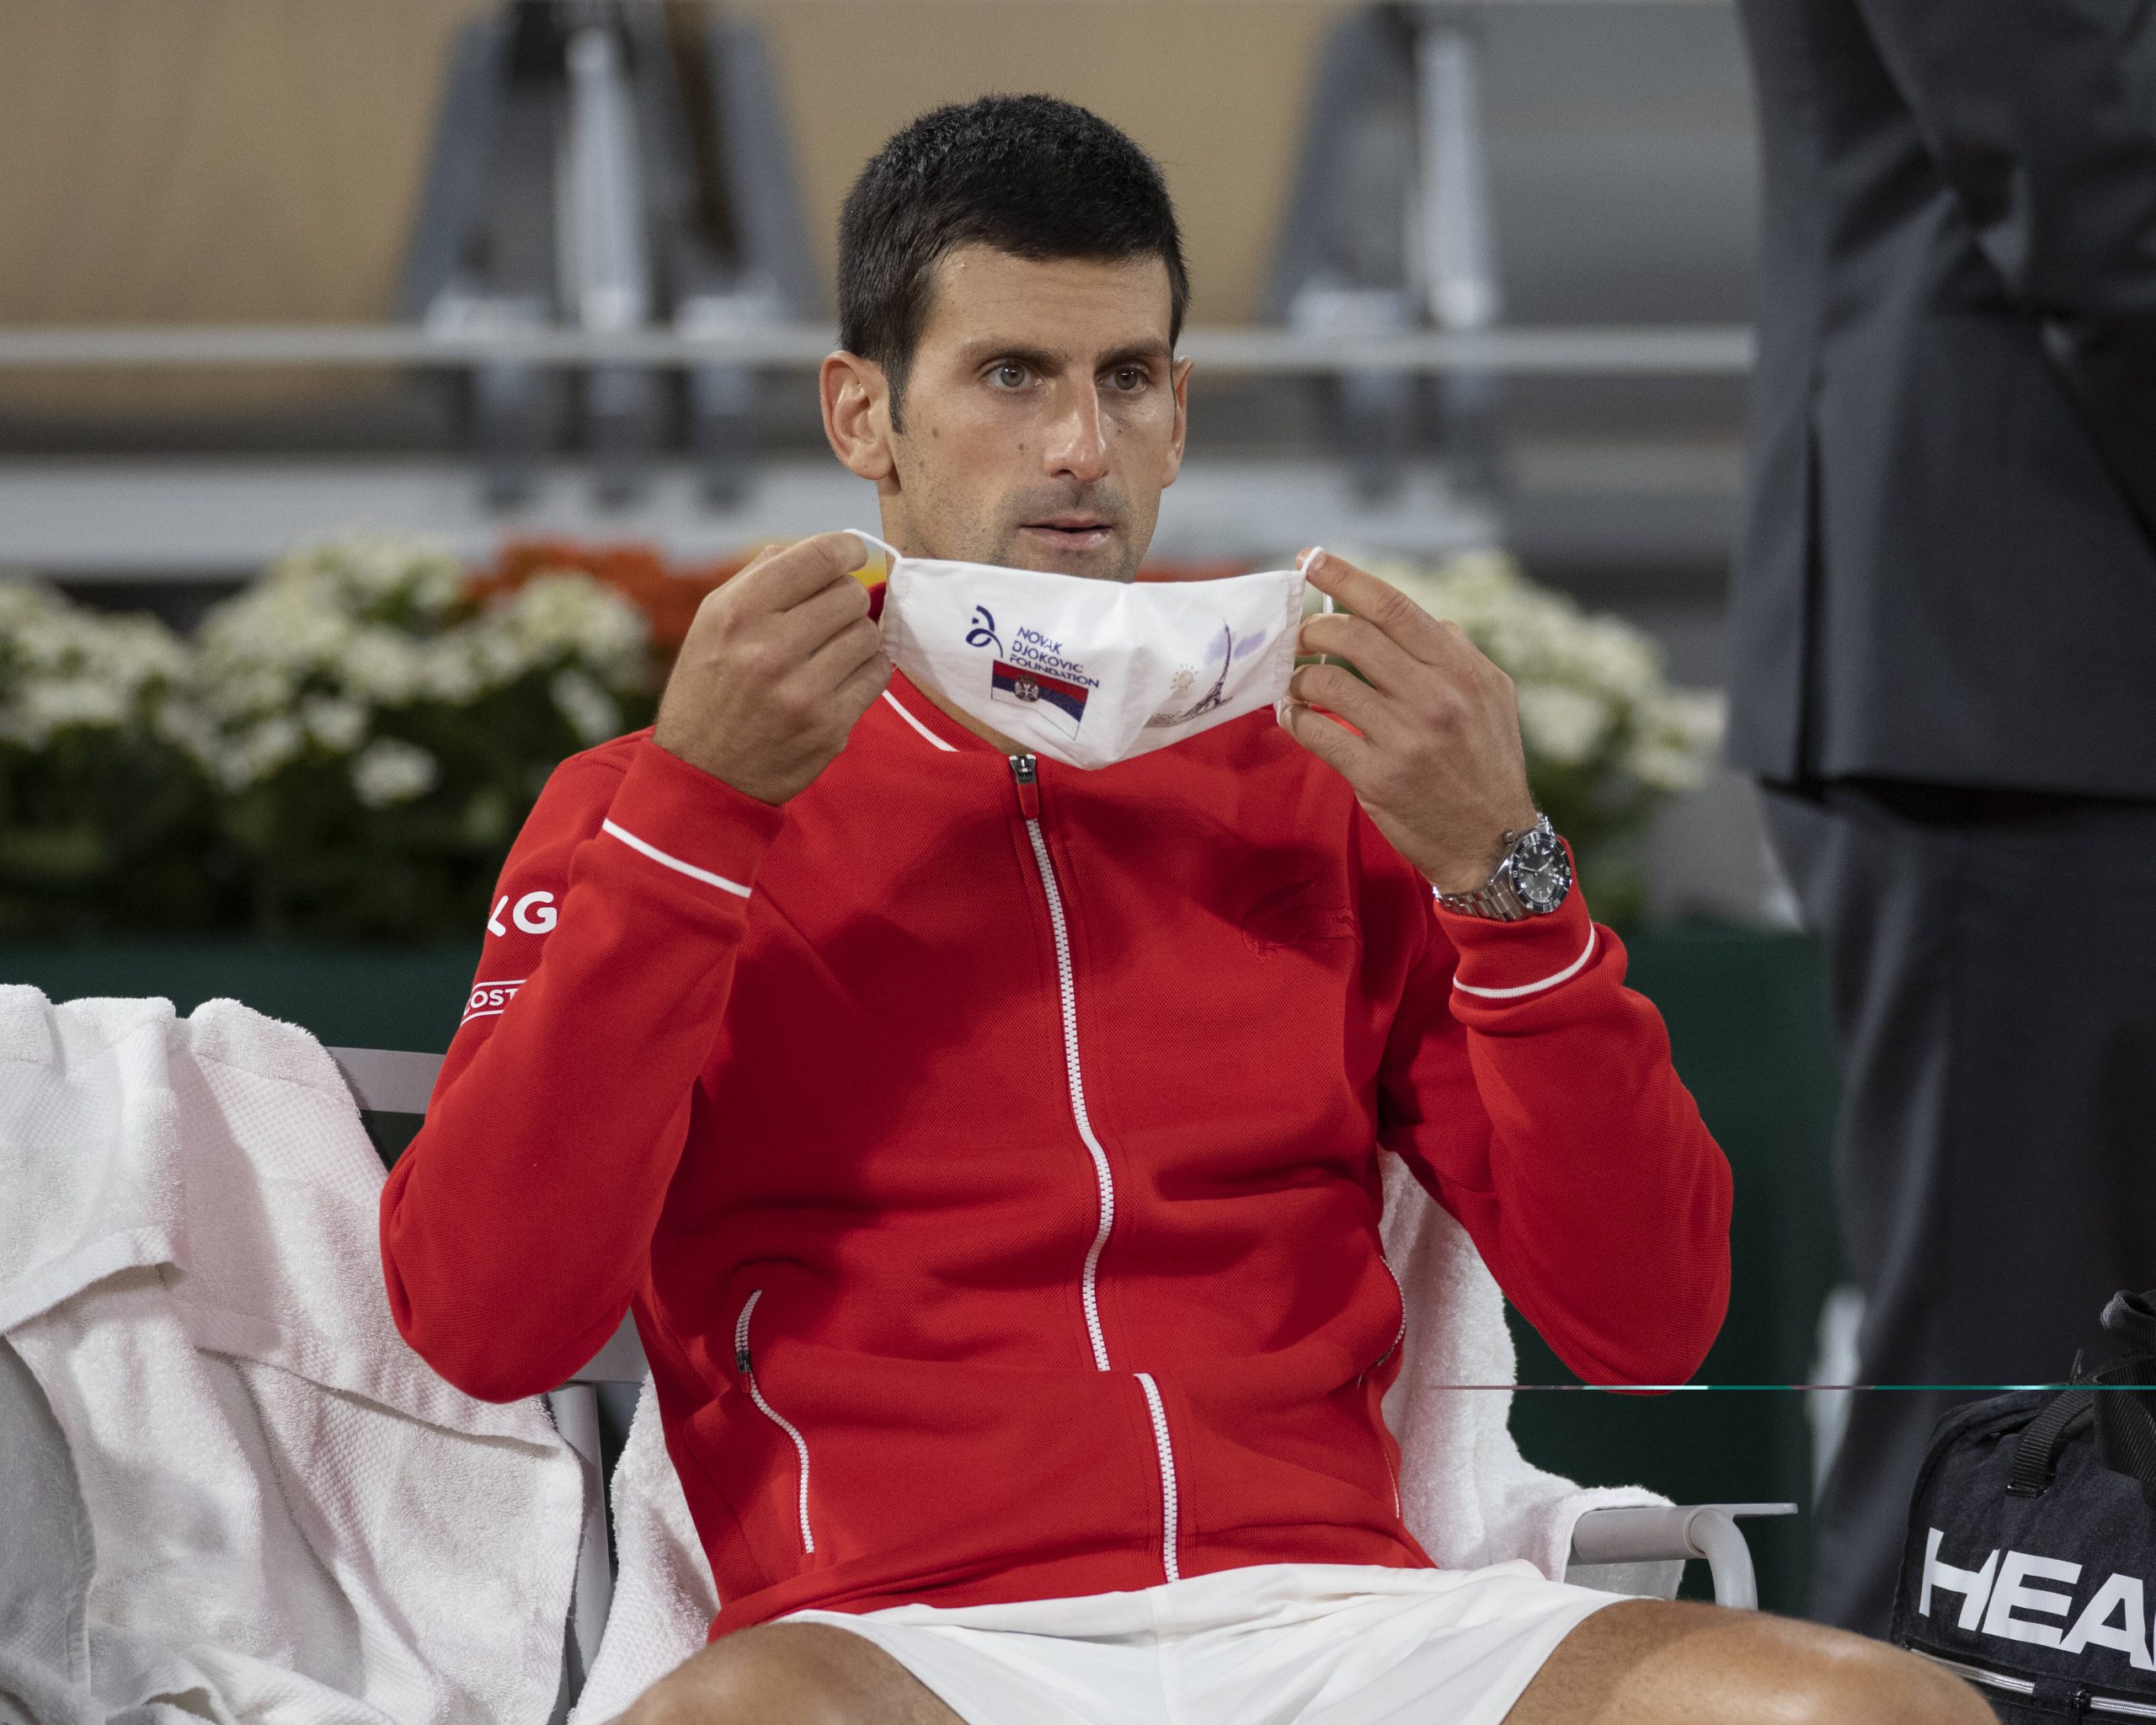 Tennis-Djokovic setzte einen Mundschutz auf.